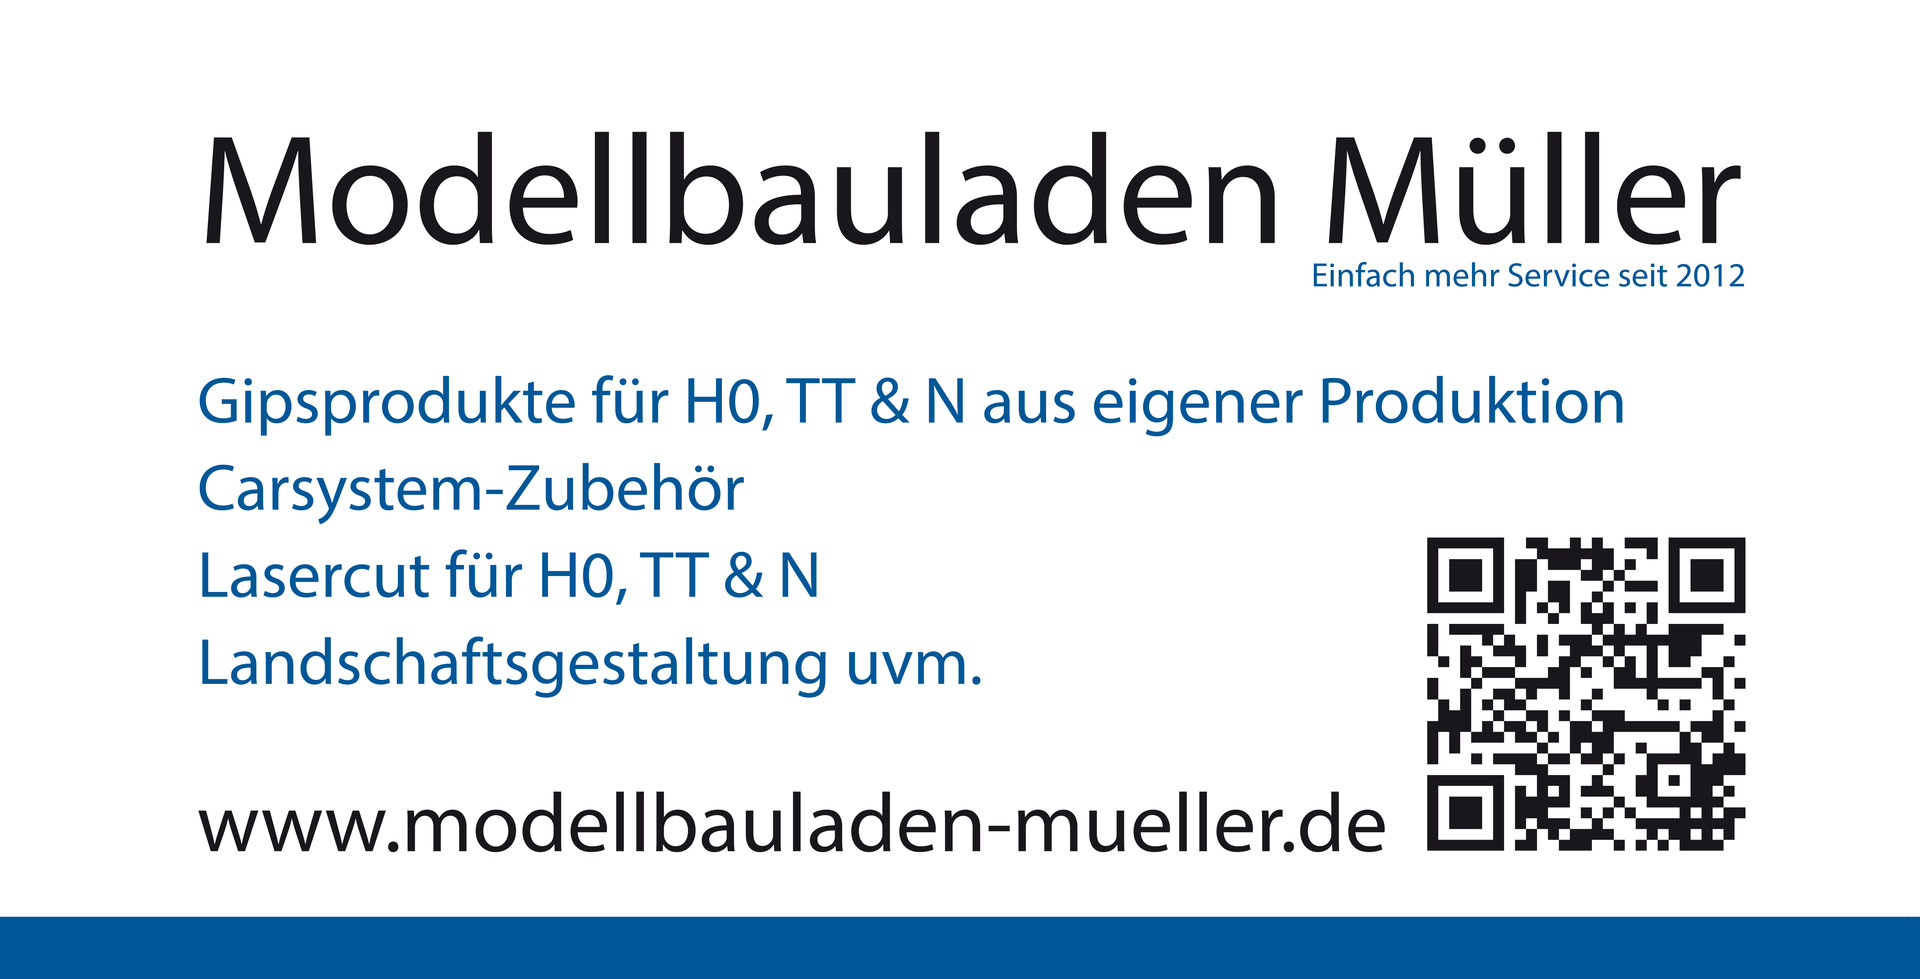 www.modellbauladen-mueller.de